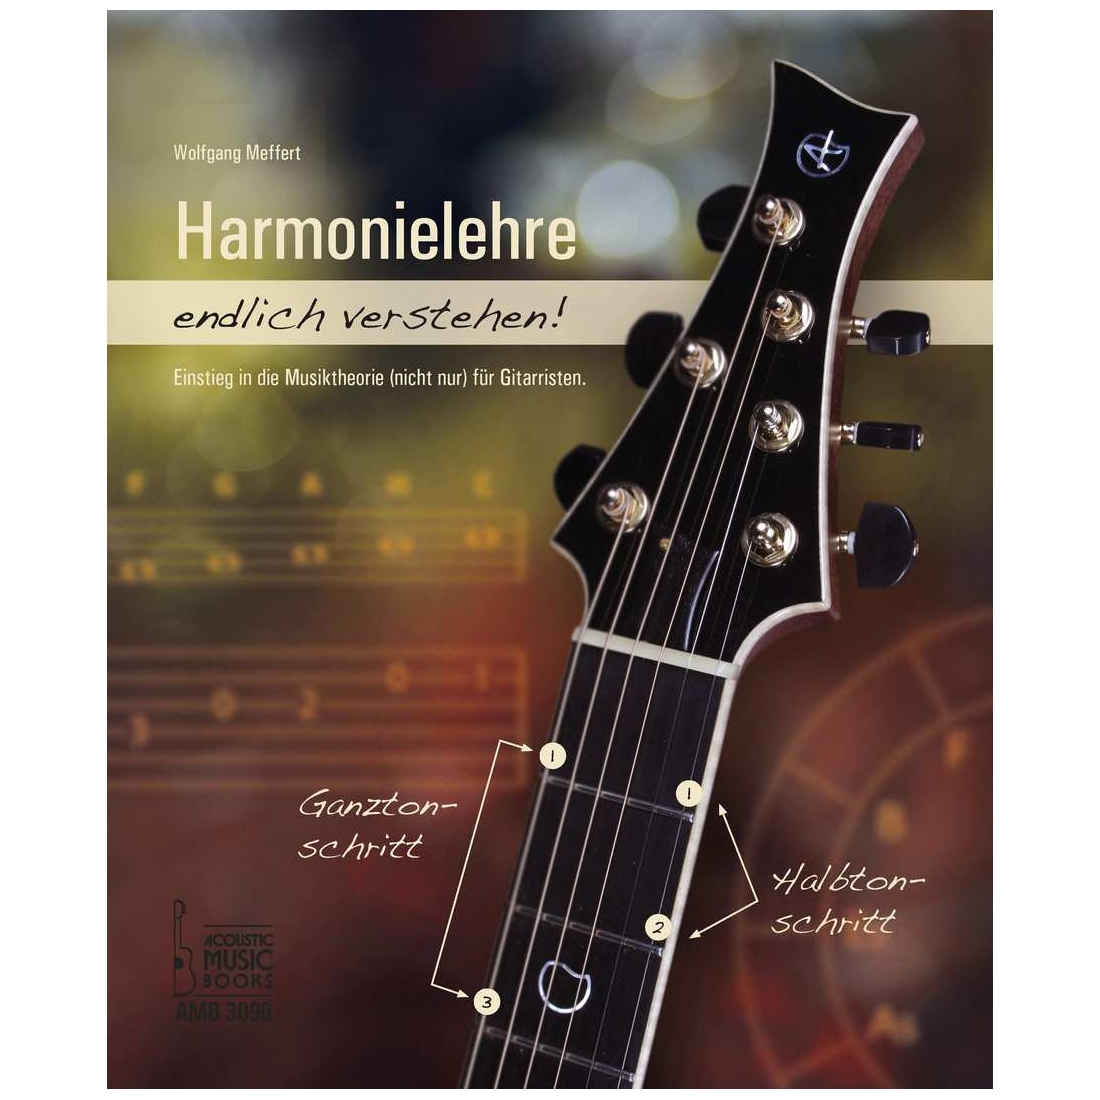 Acoustic Music Books Wolfgang Meffert - Harmonielehre endlich verstehen!